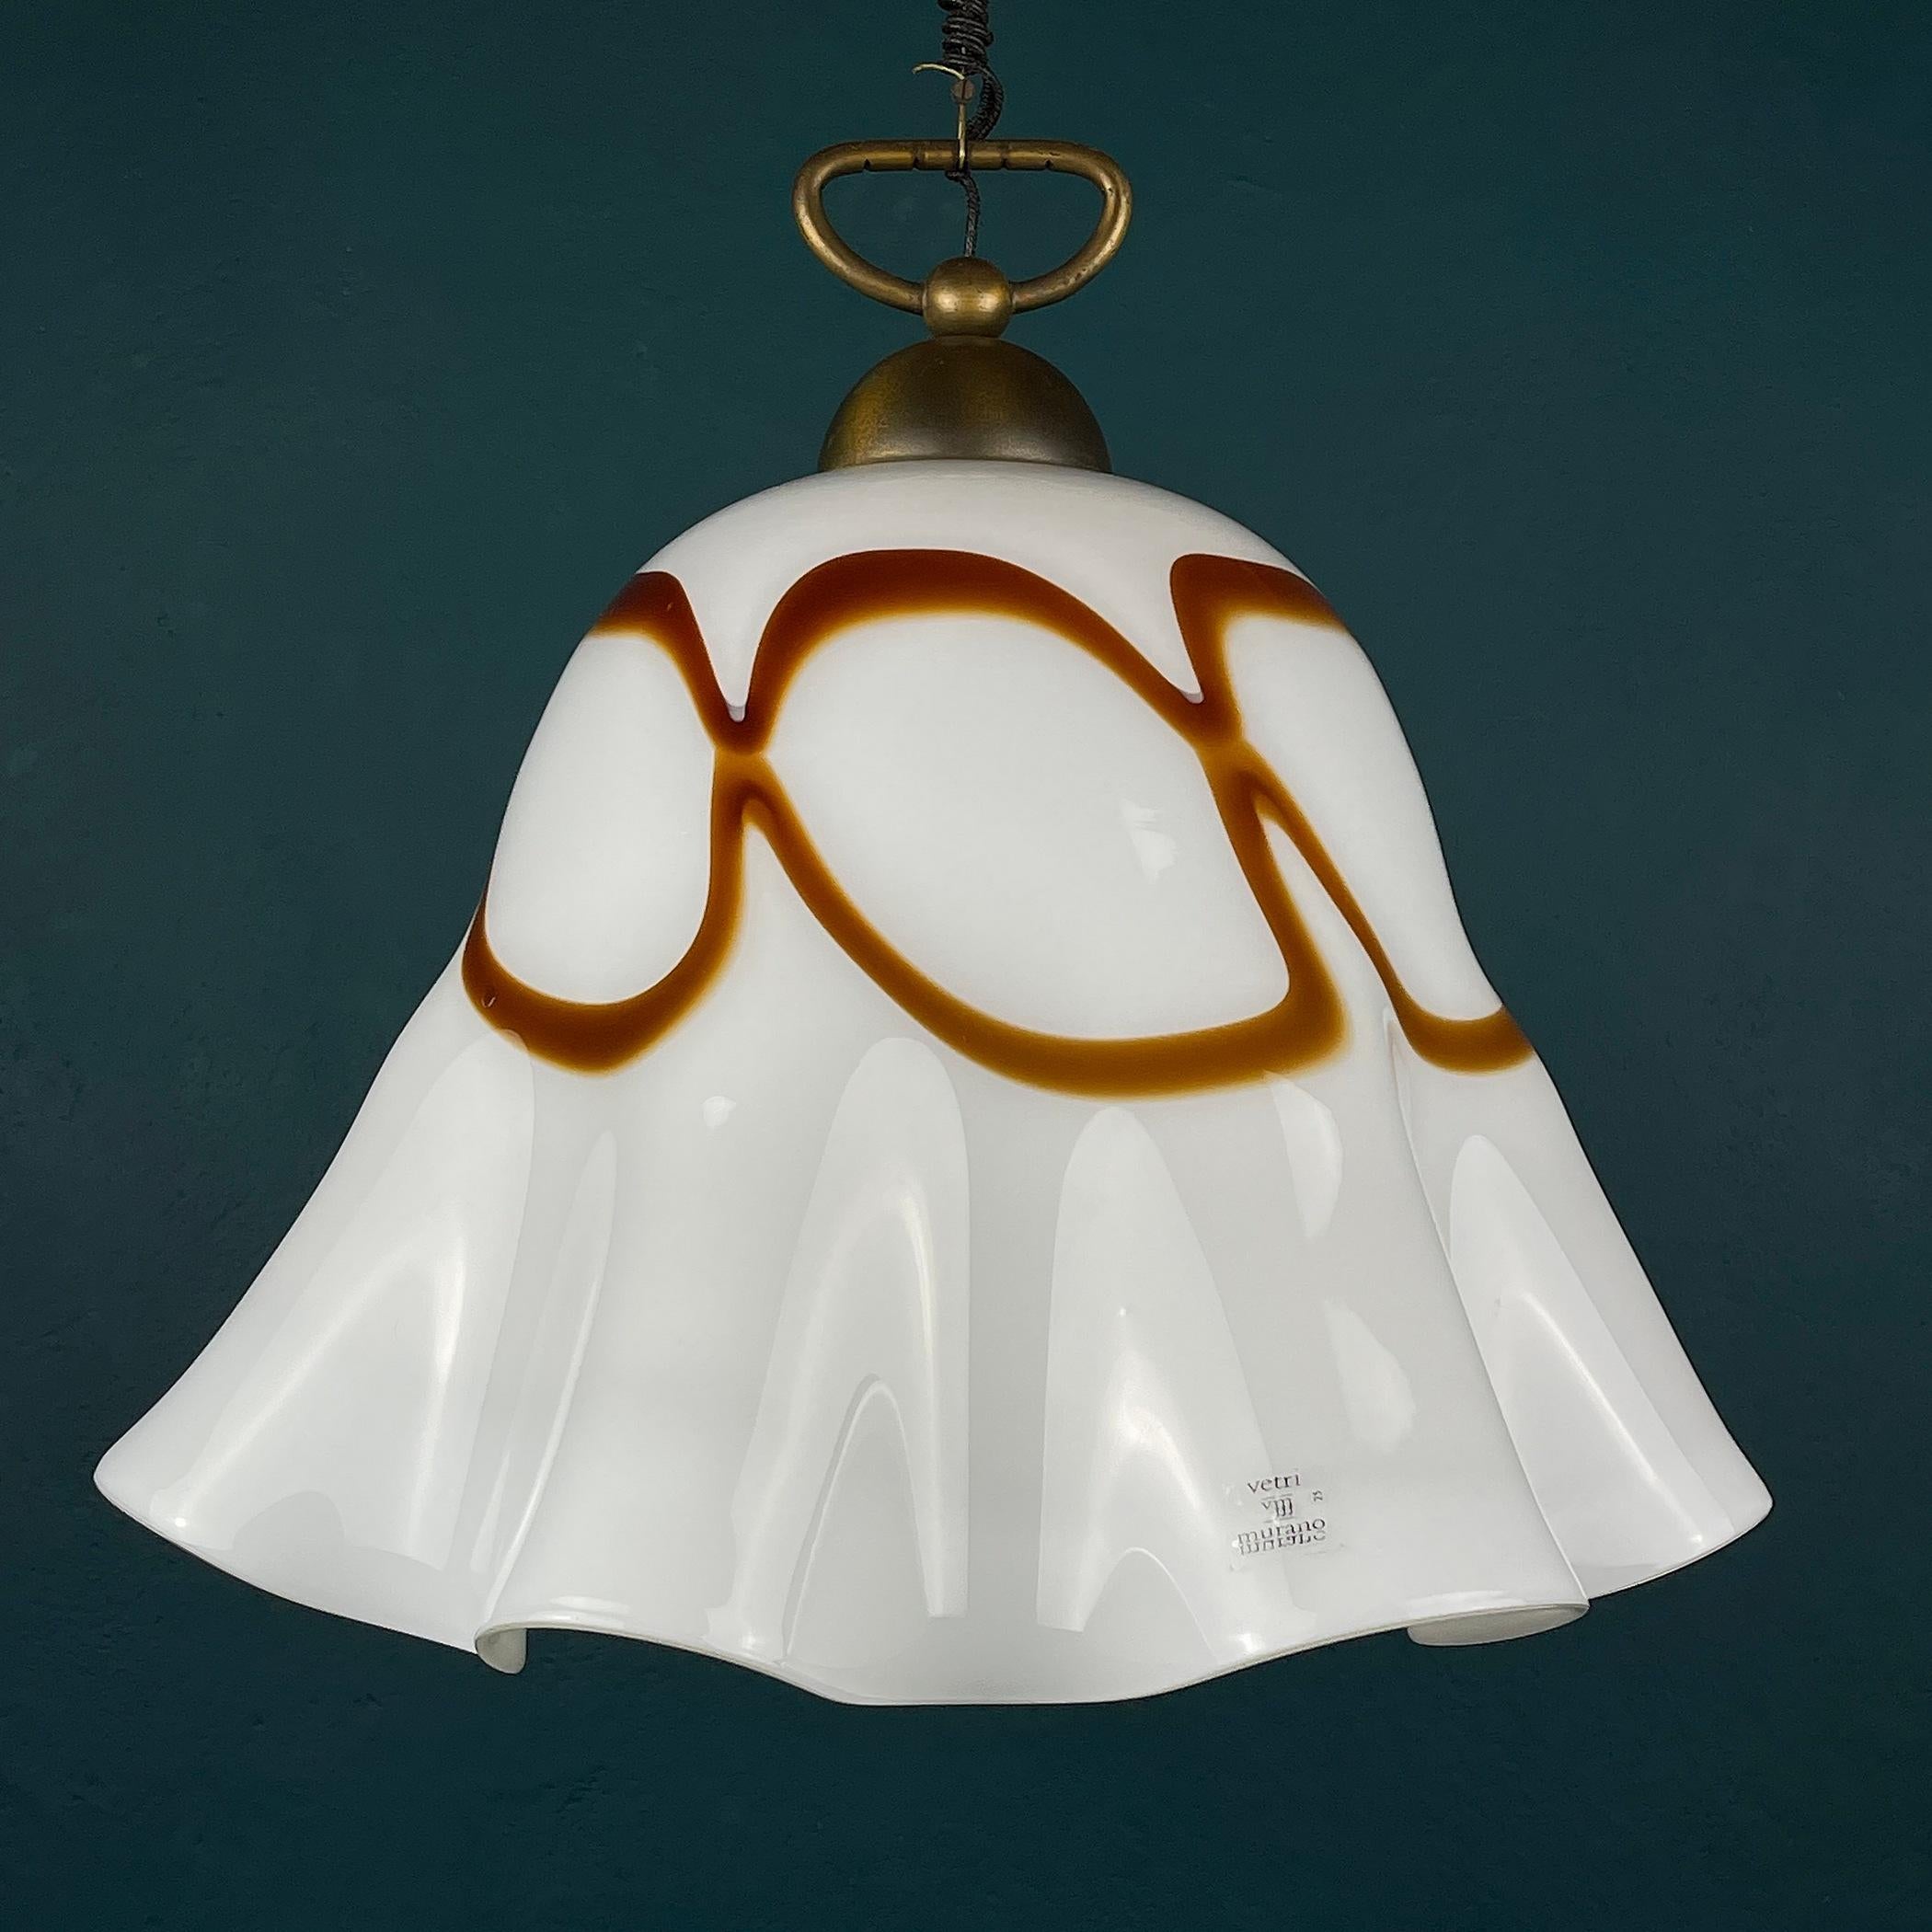 Italian Vintage Murano Glass Pendant Lamp Fazzoletto Vetri Murano, Italy, 1970s For Sale